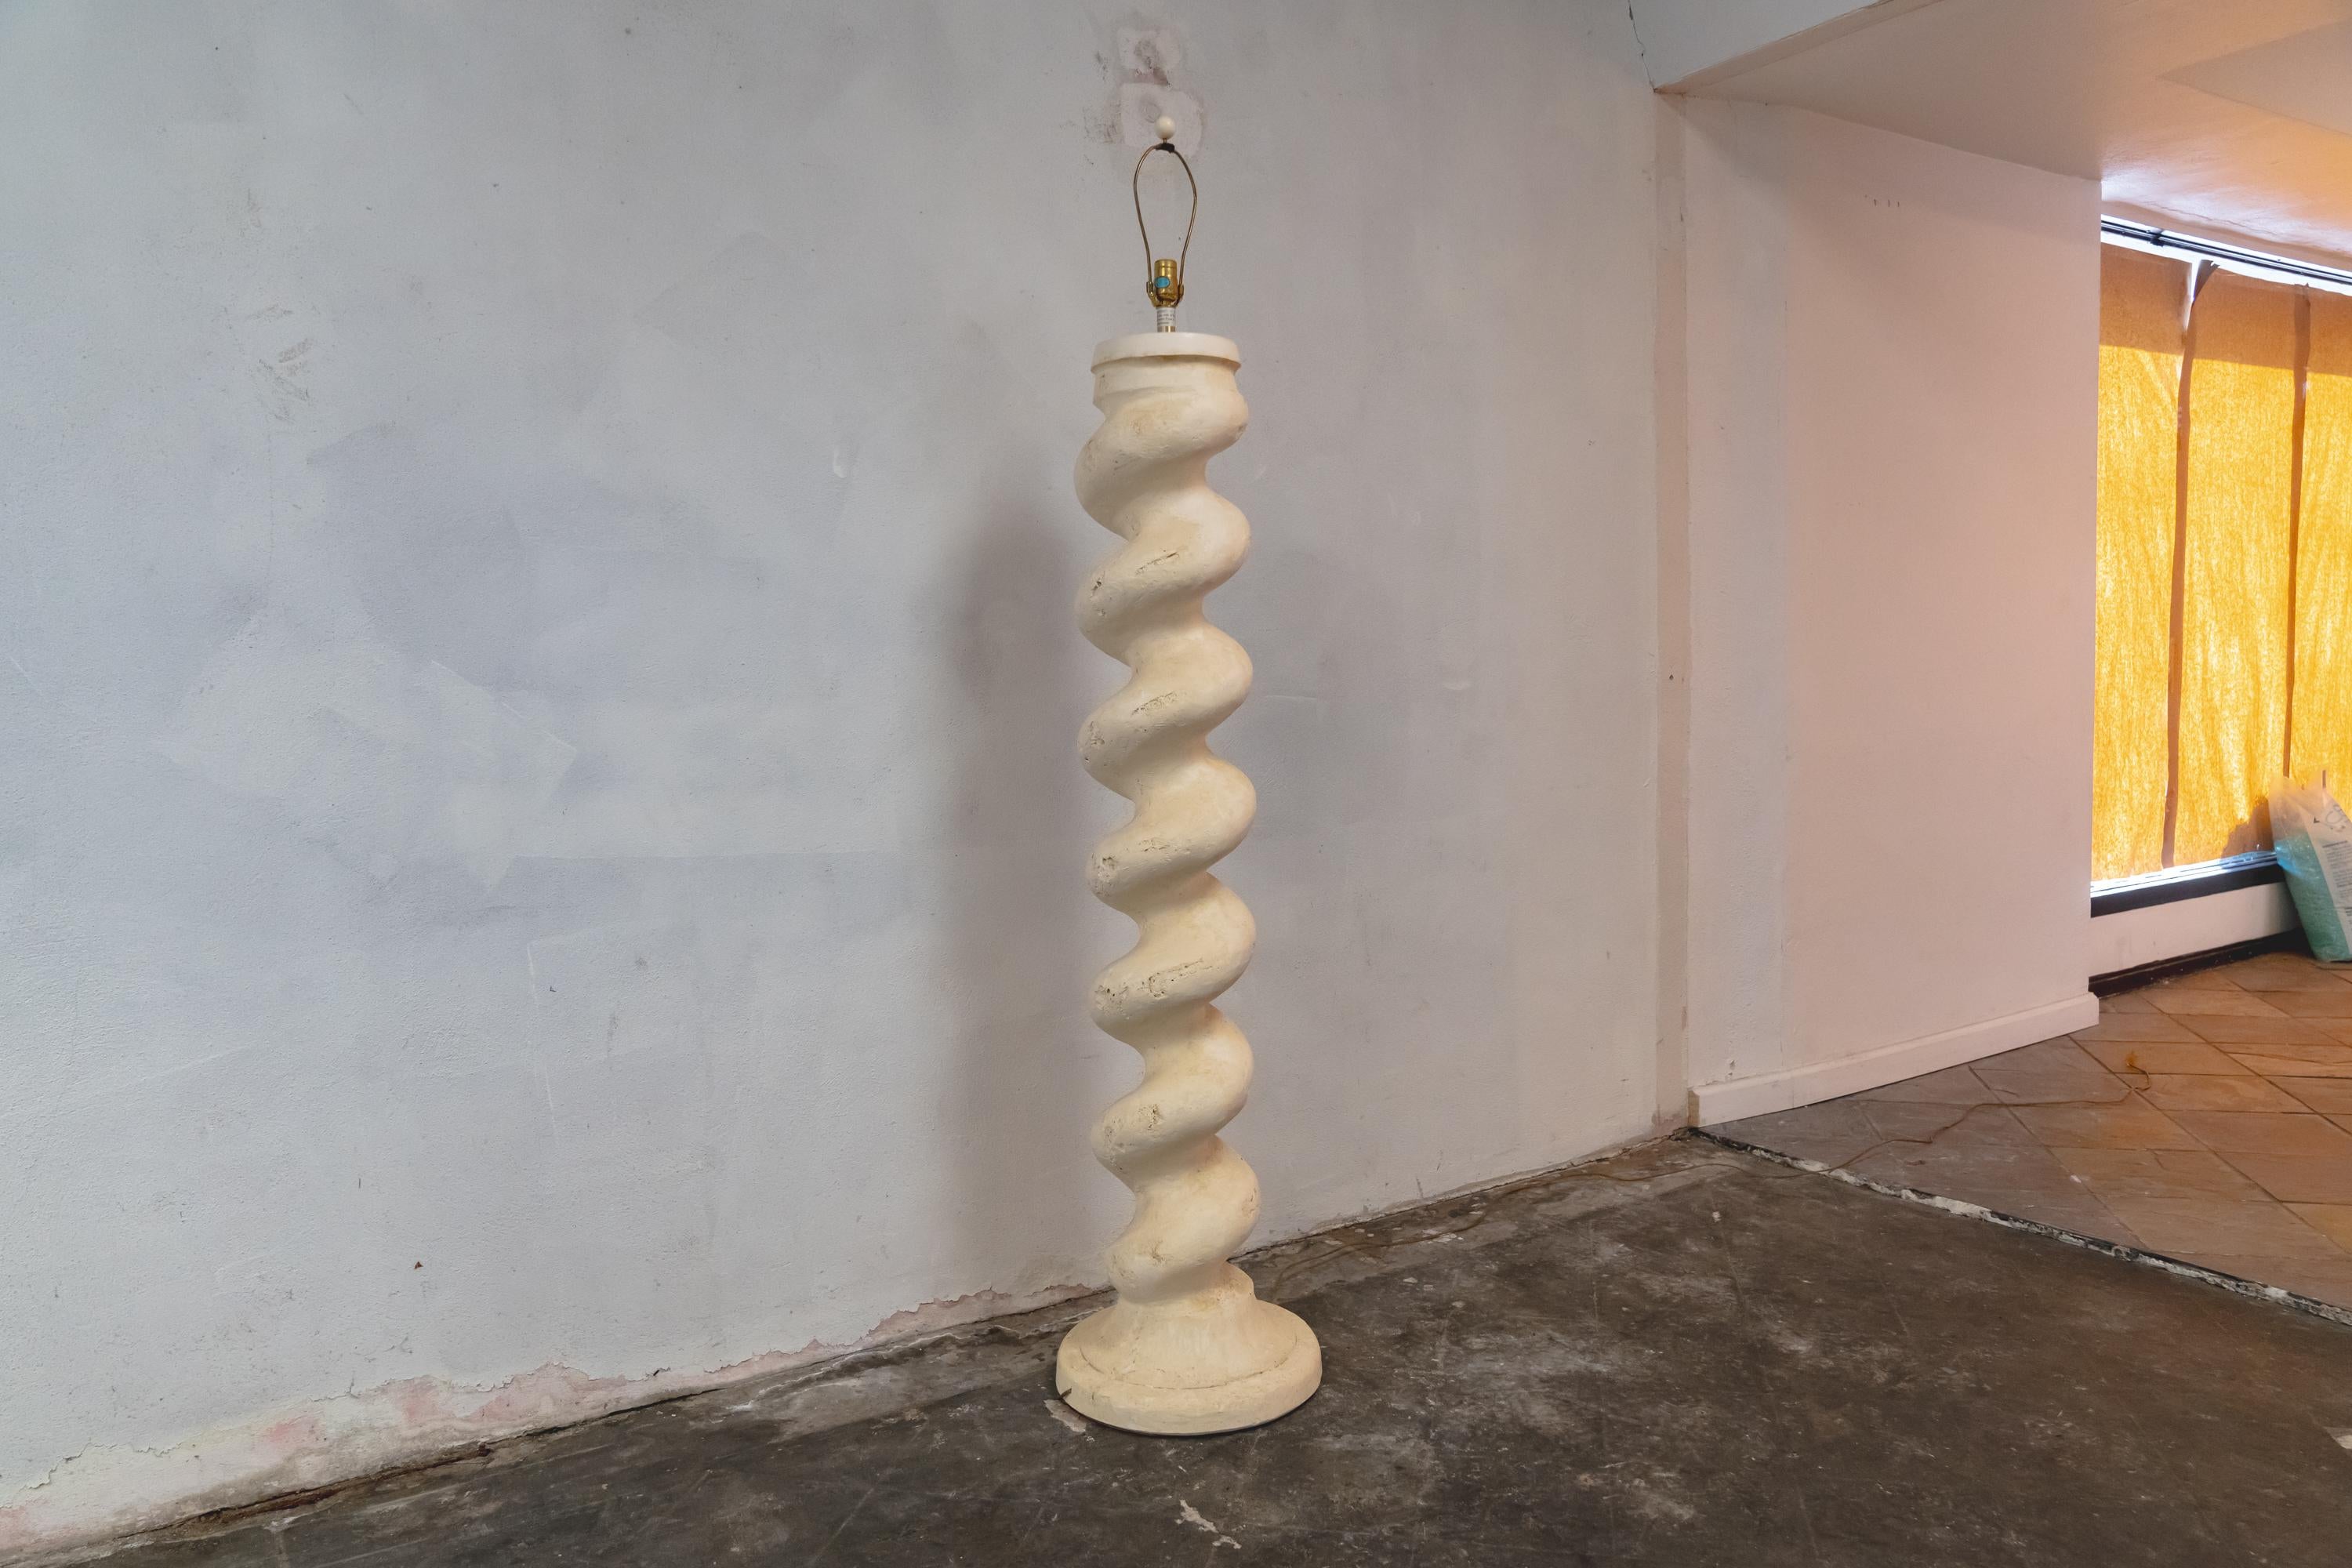 Remarquable et lourd lampadaire en plâtre massif, de forme spiralée, conçu par Michael Taylor.
En bordure de route vers NYC/Philly $350